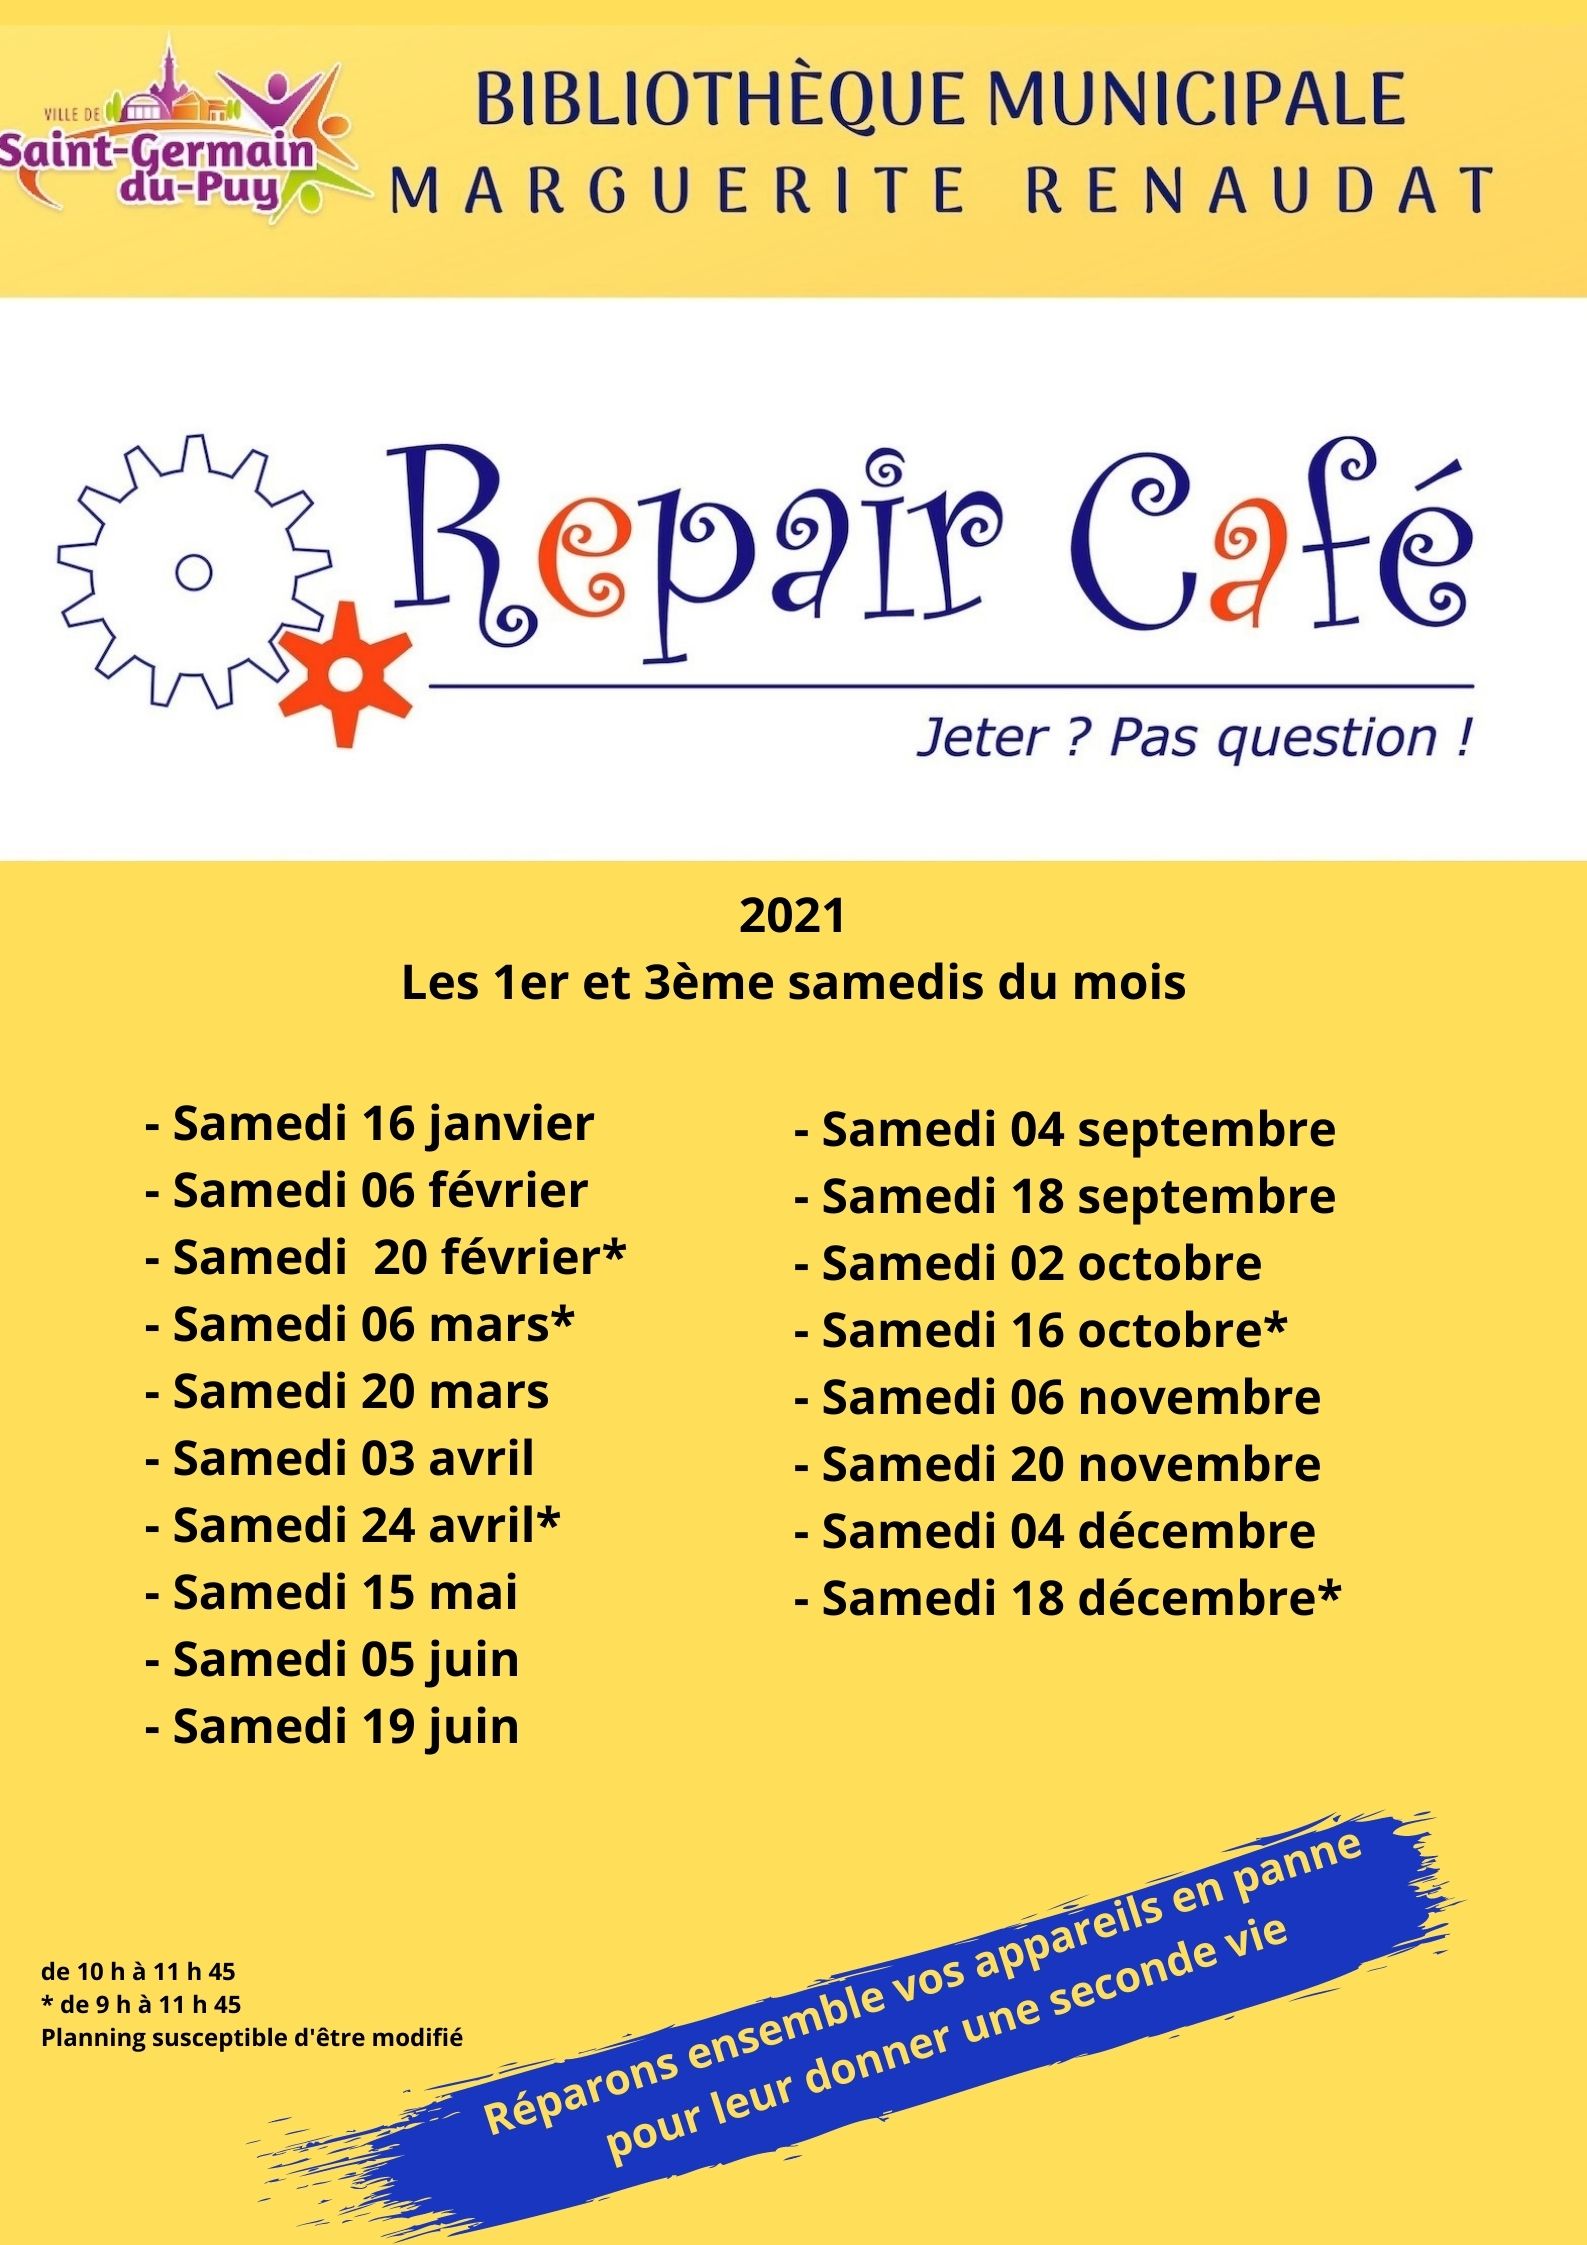 repairs cafe 2021